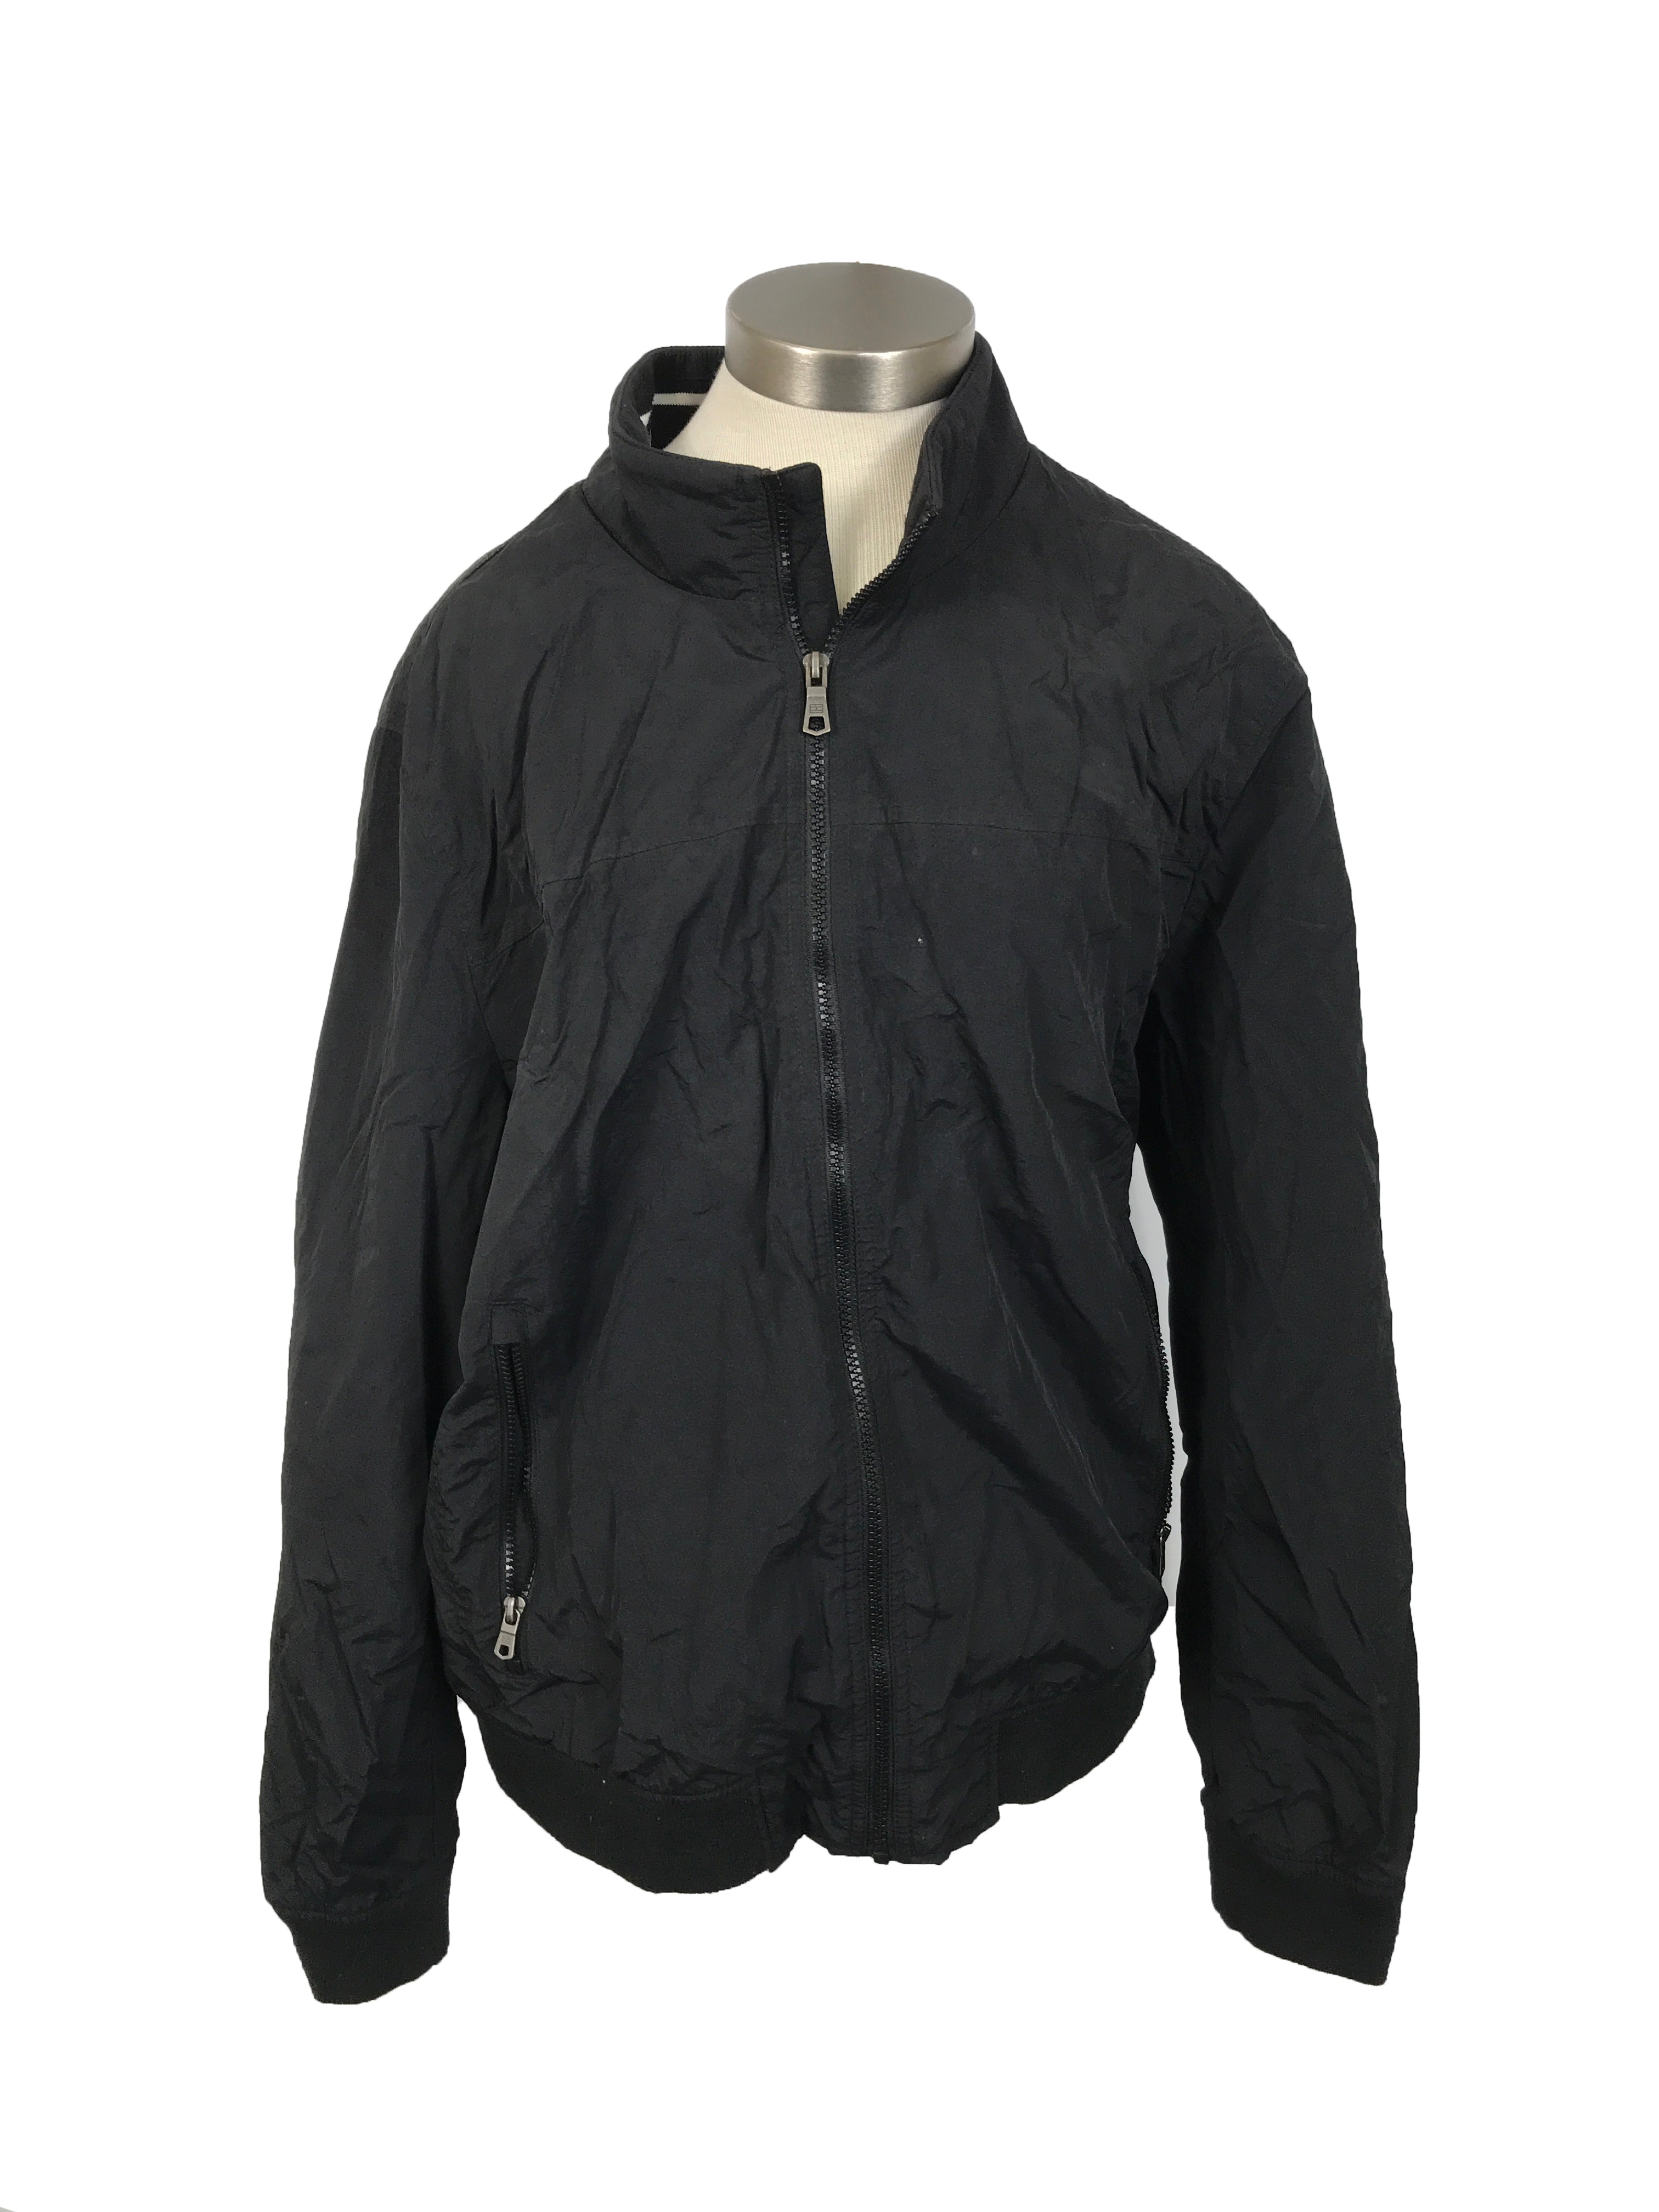 Tommy Hilfiger Black Windbreaker Jacket Men's Size XL